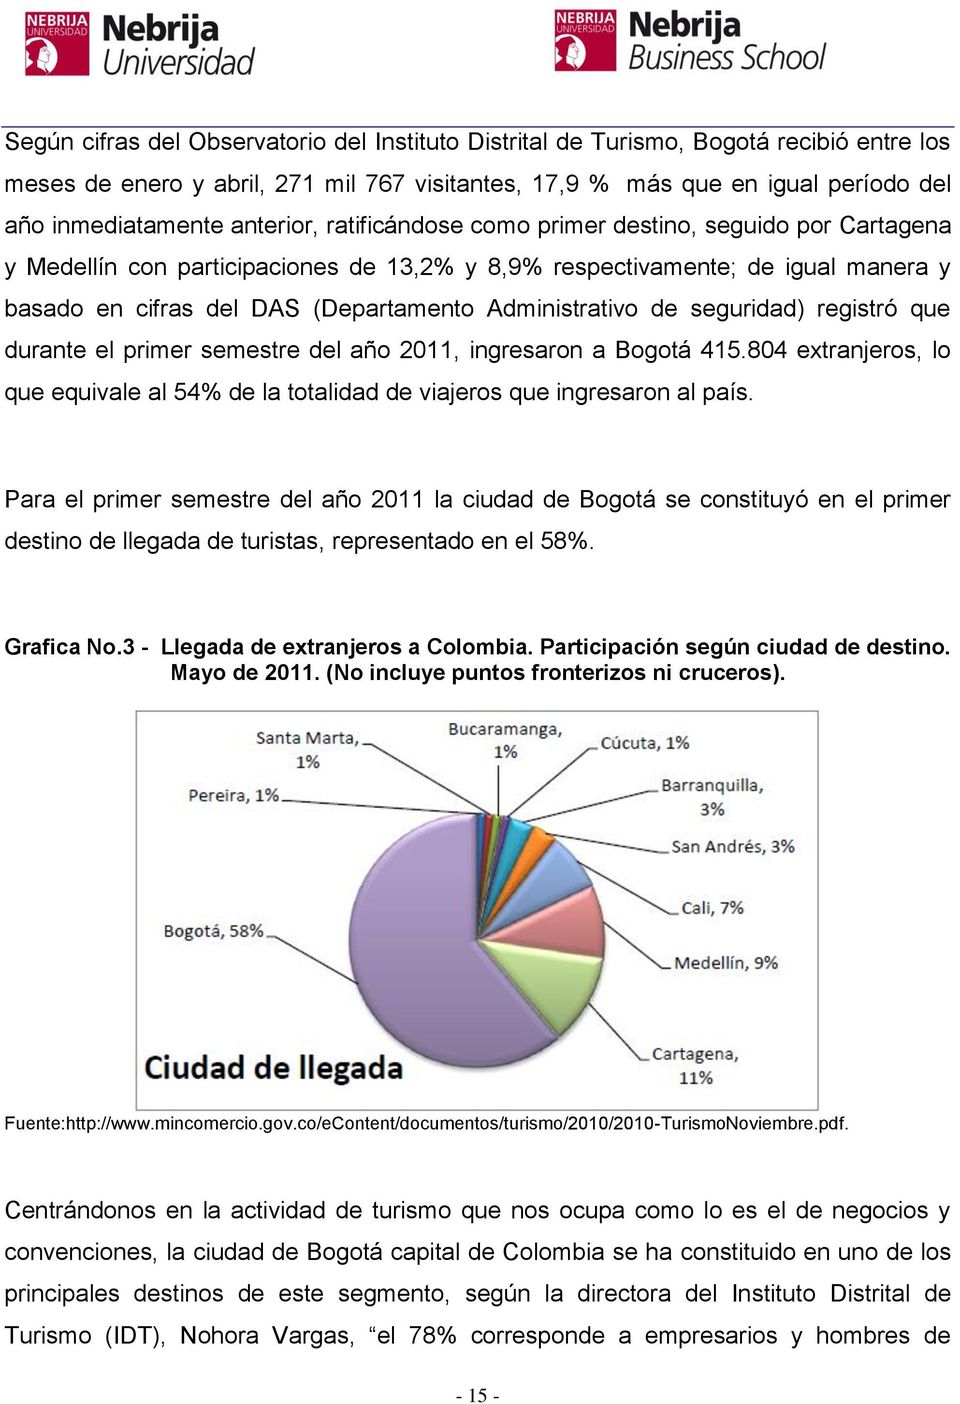 Administrativo de seguridad) registró que durante el primer semestre del año 2011, ingresaron a Bogotá 415.804 extranjeros, lo que equivale al 54% de la totalidad de viajeros que ingresaron al país.